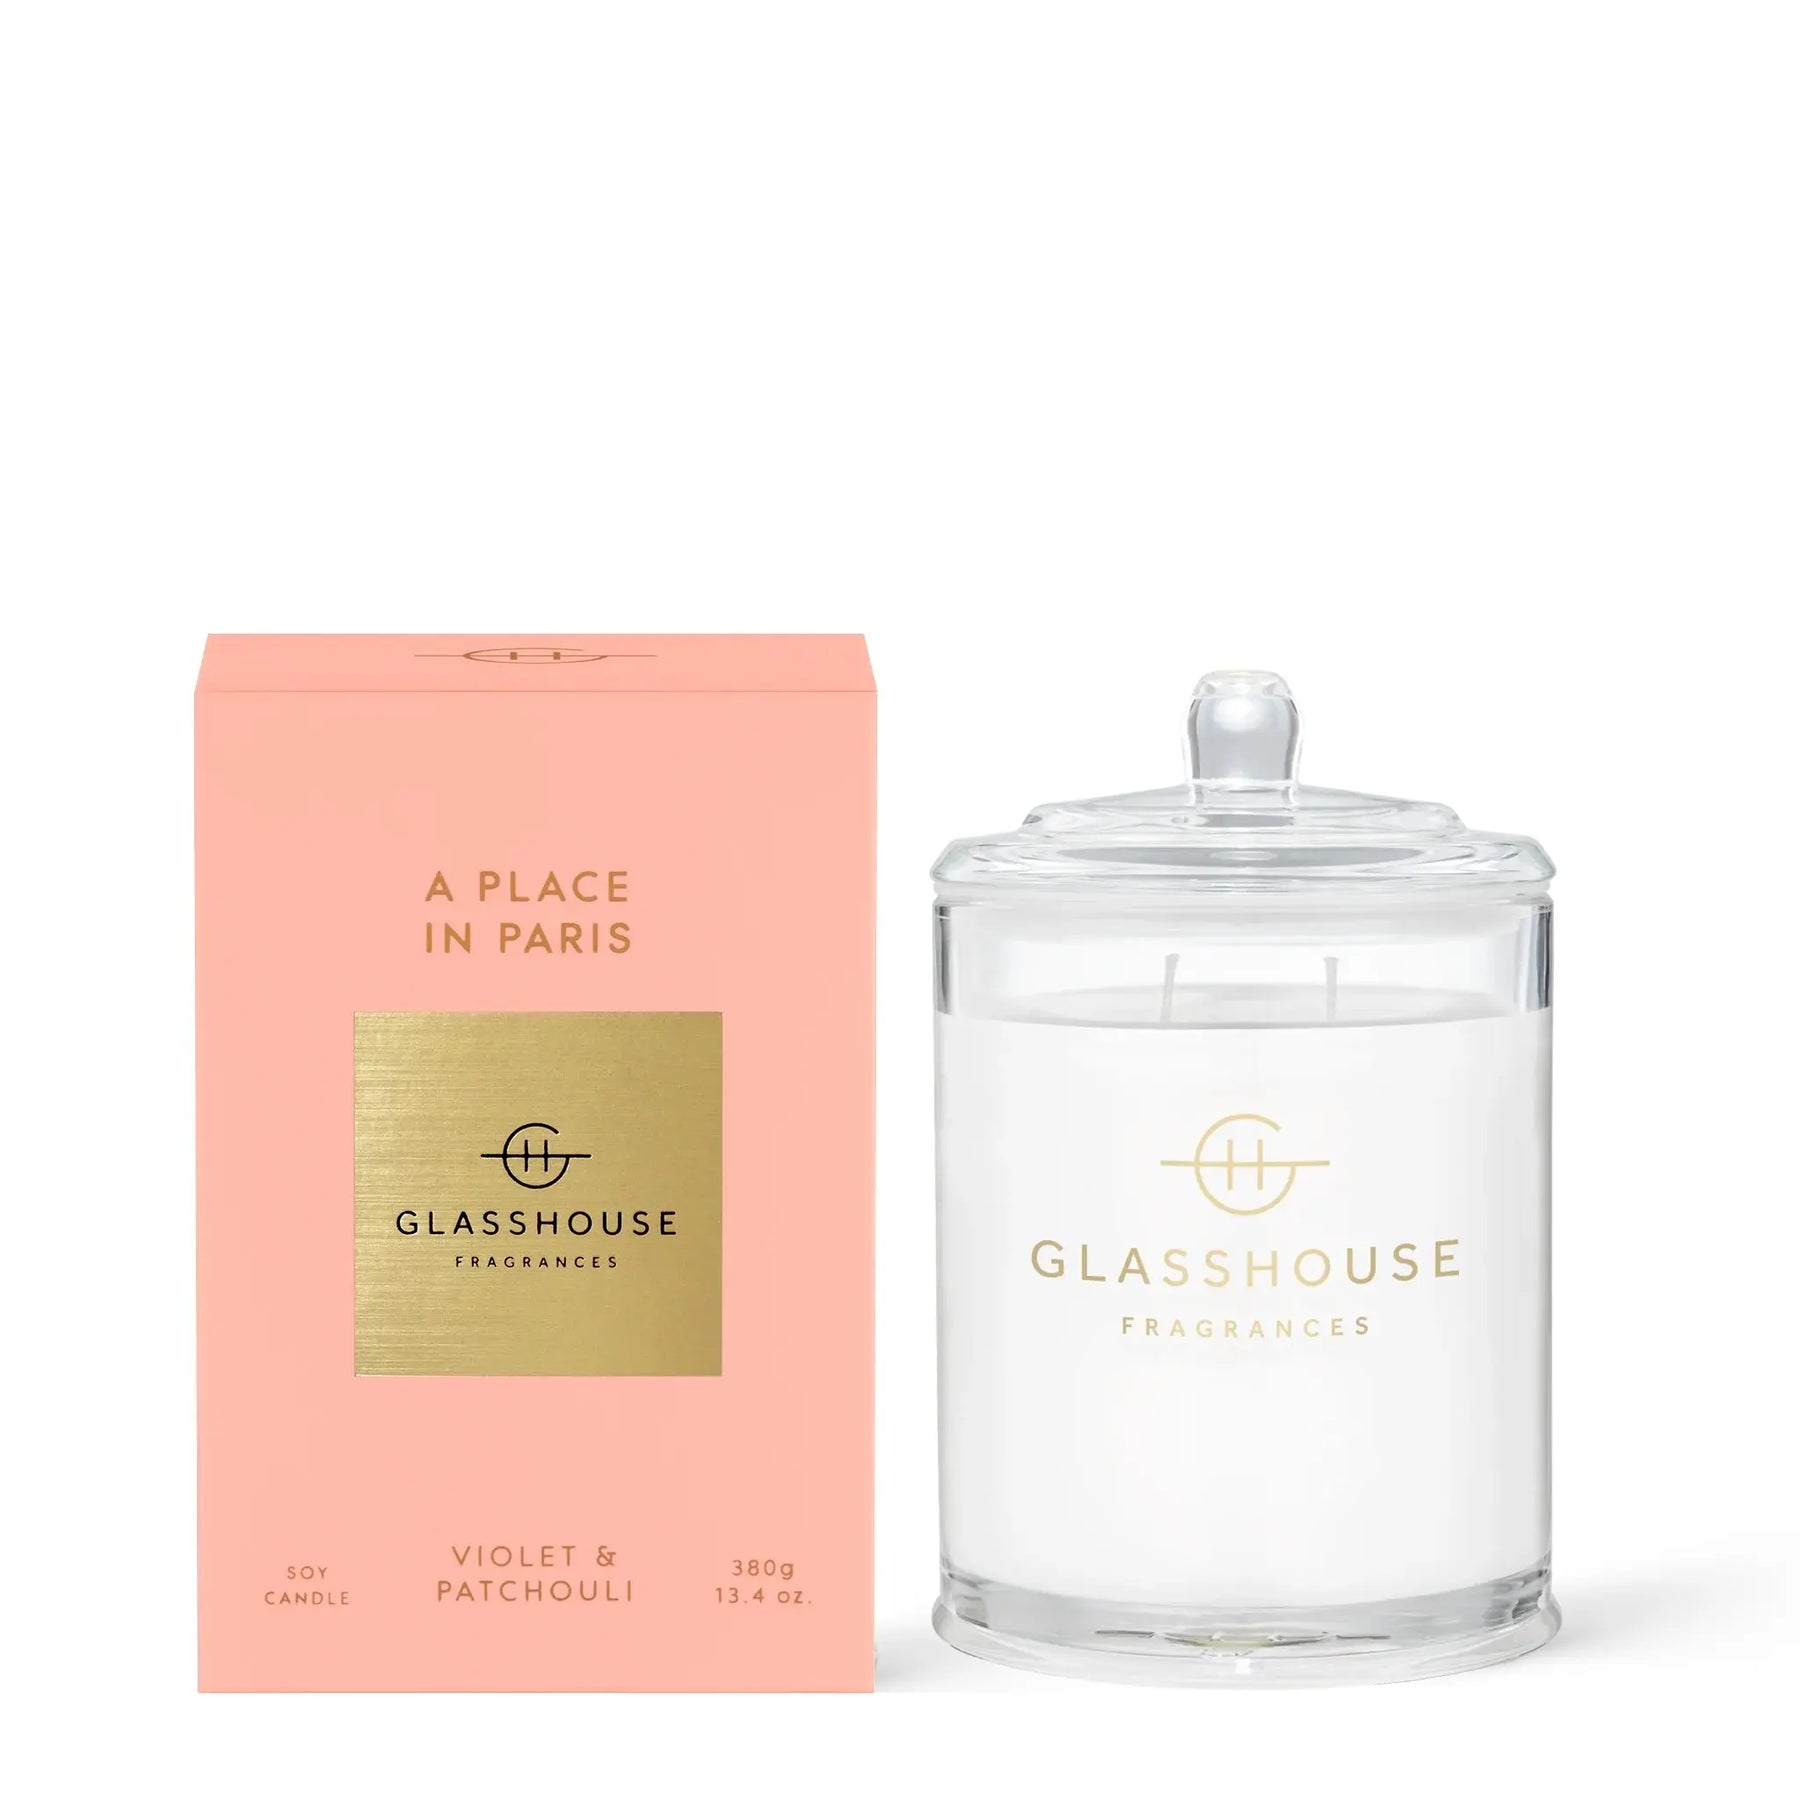 Glasshouse Fragrances A Place in Paris Soy Candle Violet and Patchouli 380 grams 13.4 ounces